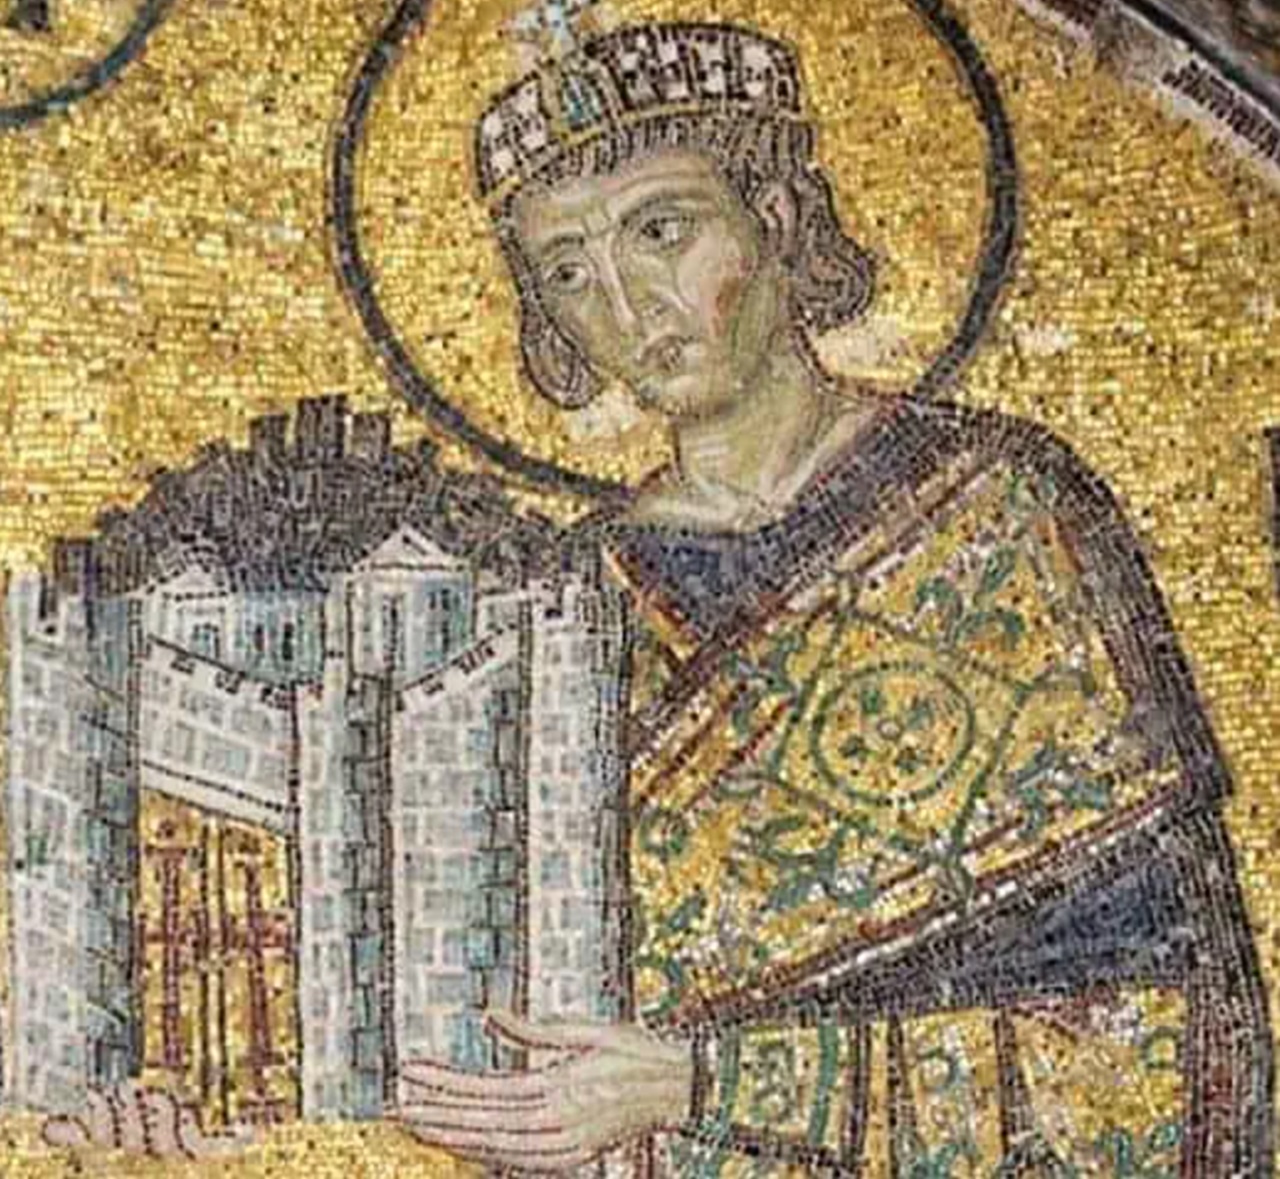 tempio romano mosaico Costantino imperatore